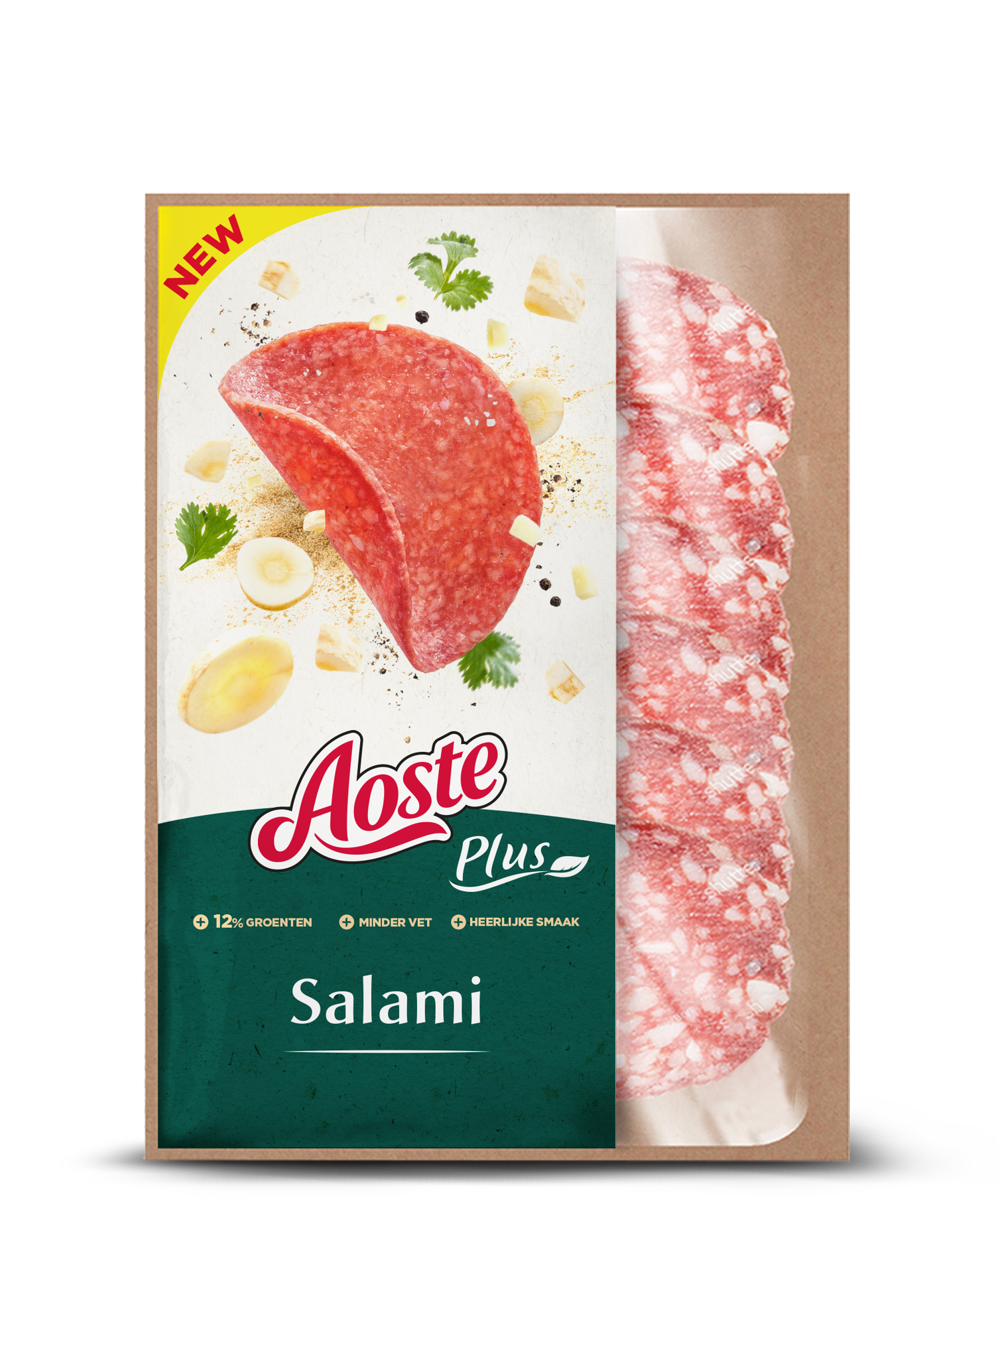 Aoste Plus Salami pour les tartines : 2,79 € pour 90 g